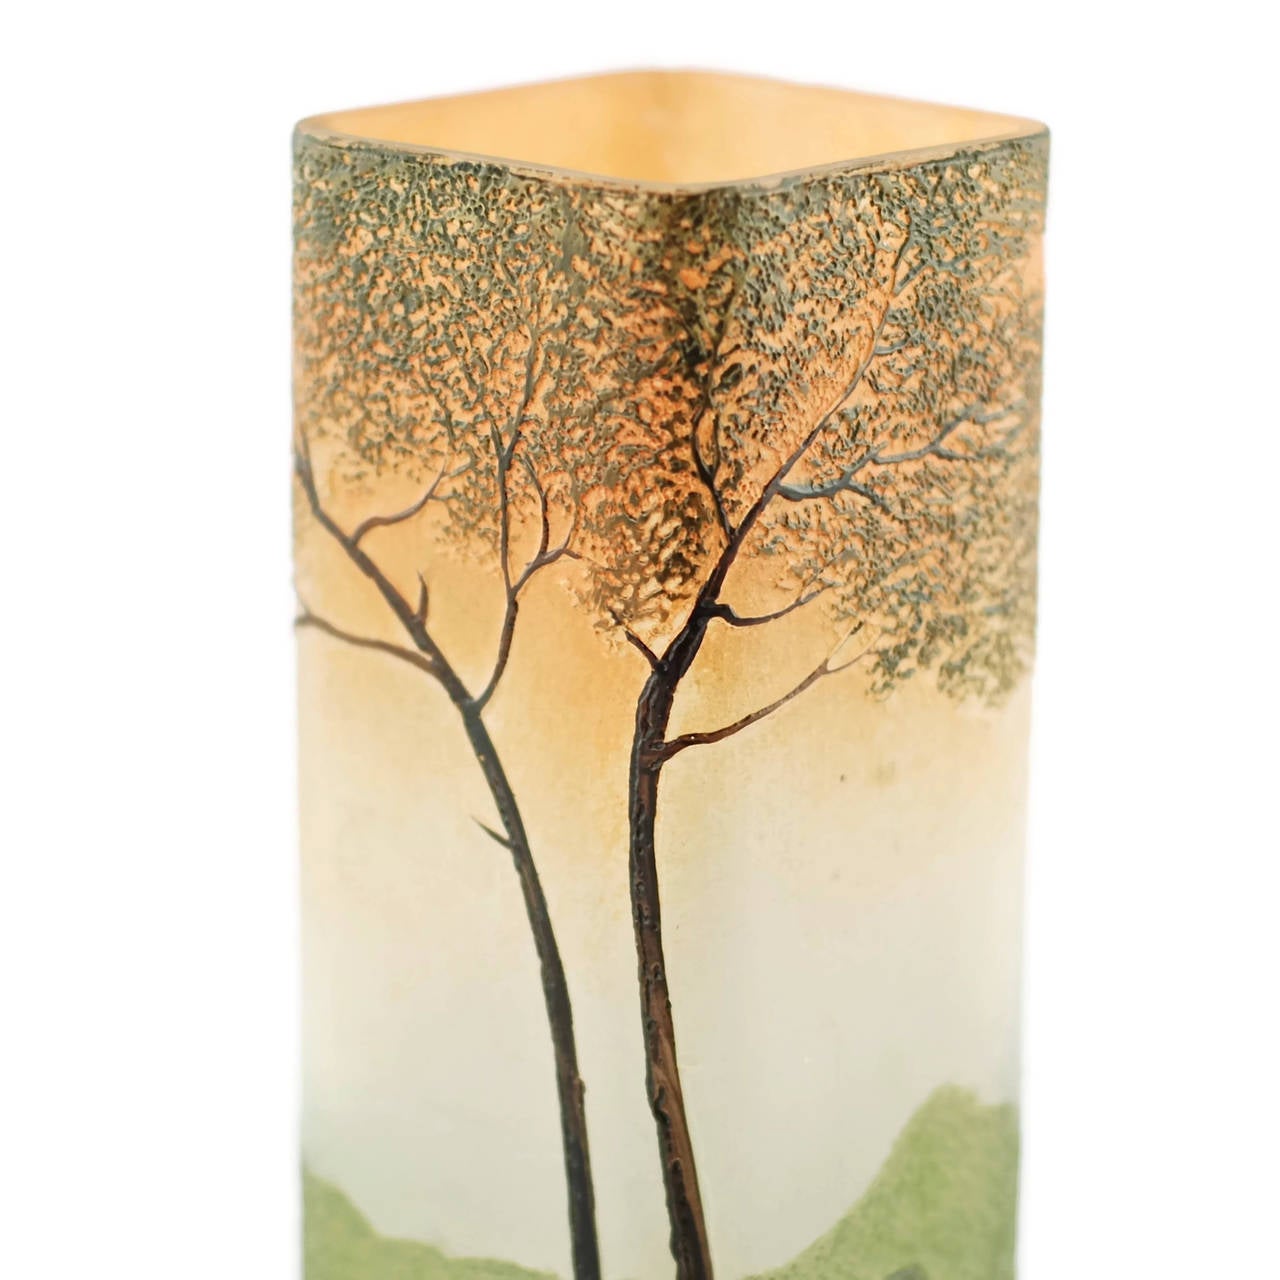 20th Century Art Nouveau Legras Enameled Cameo Glass Vase with Landscape Motif